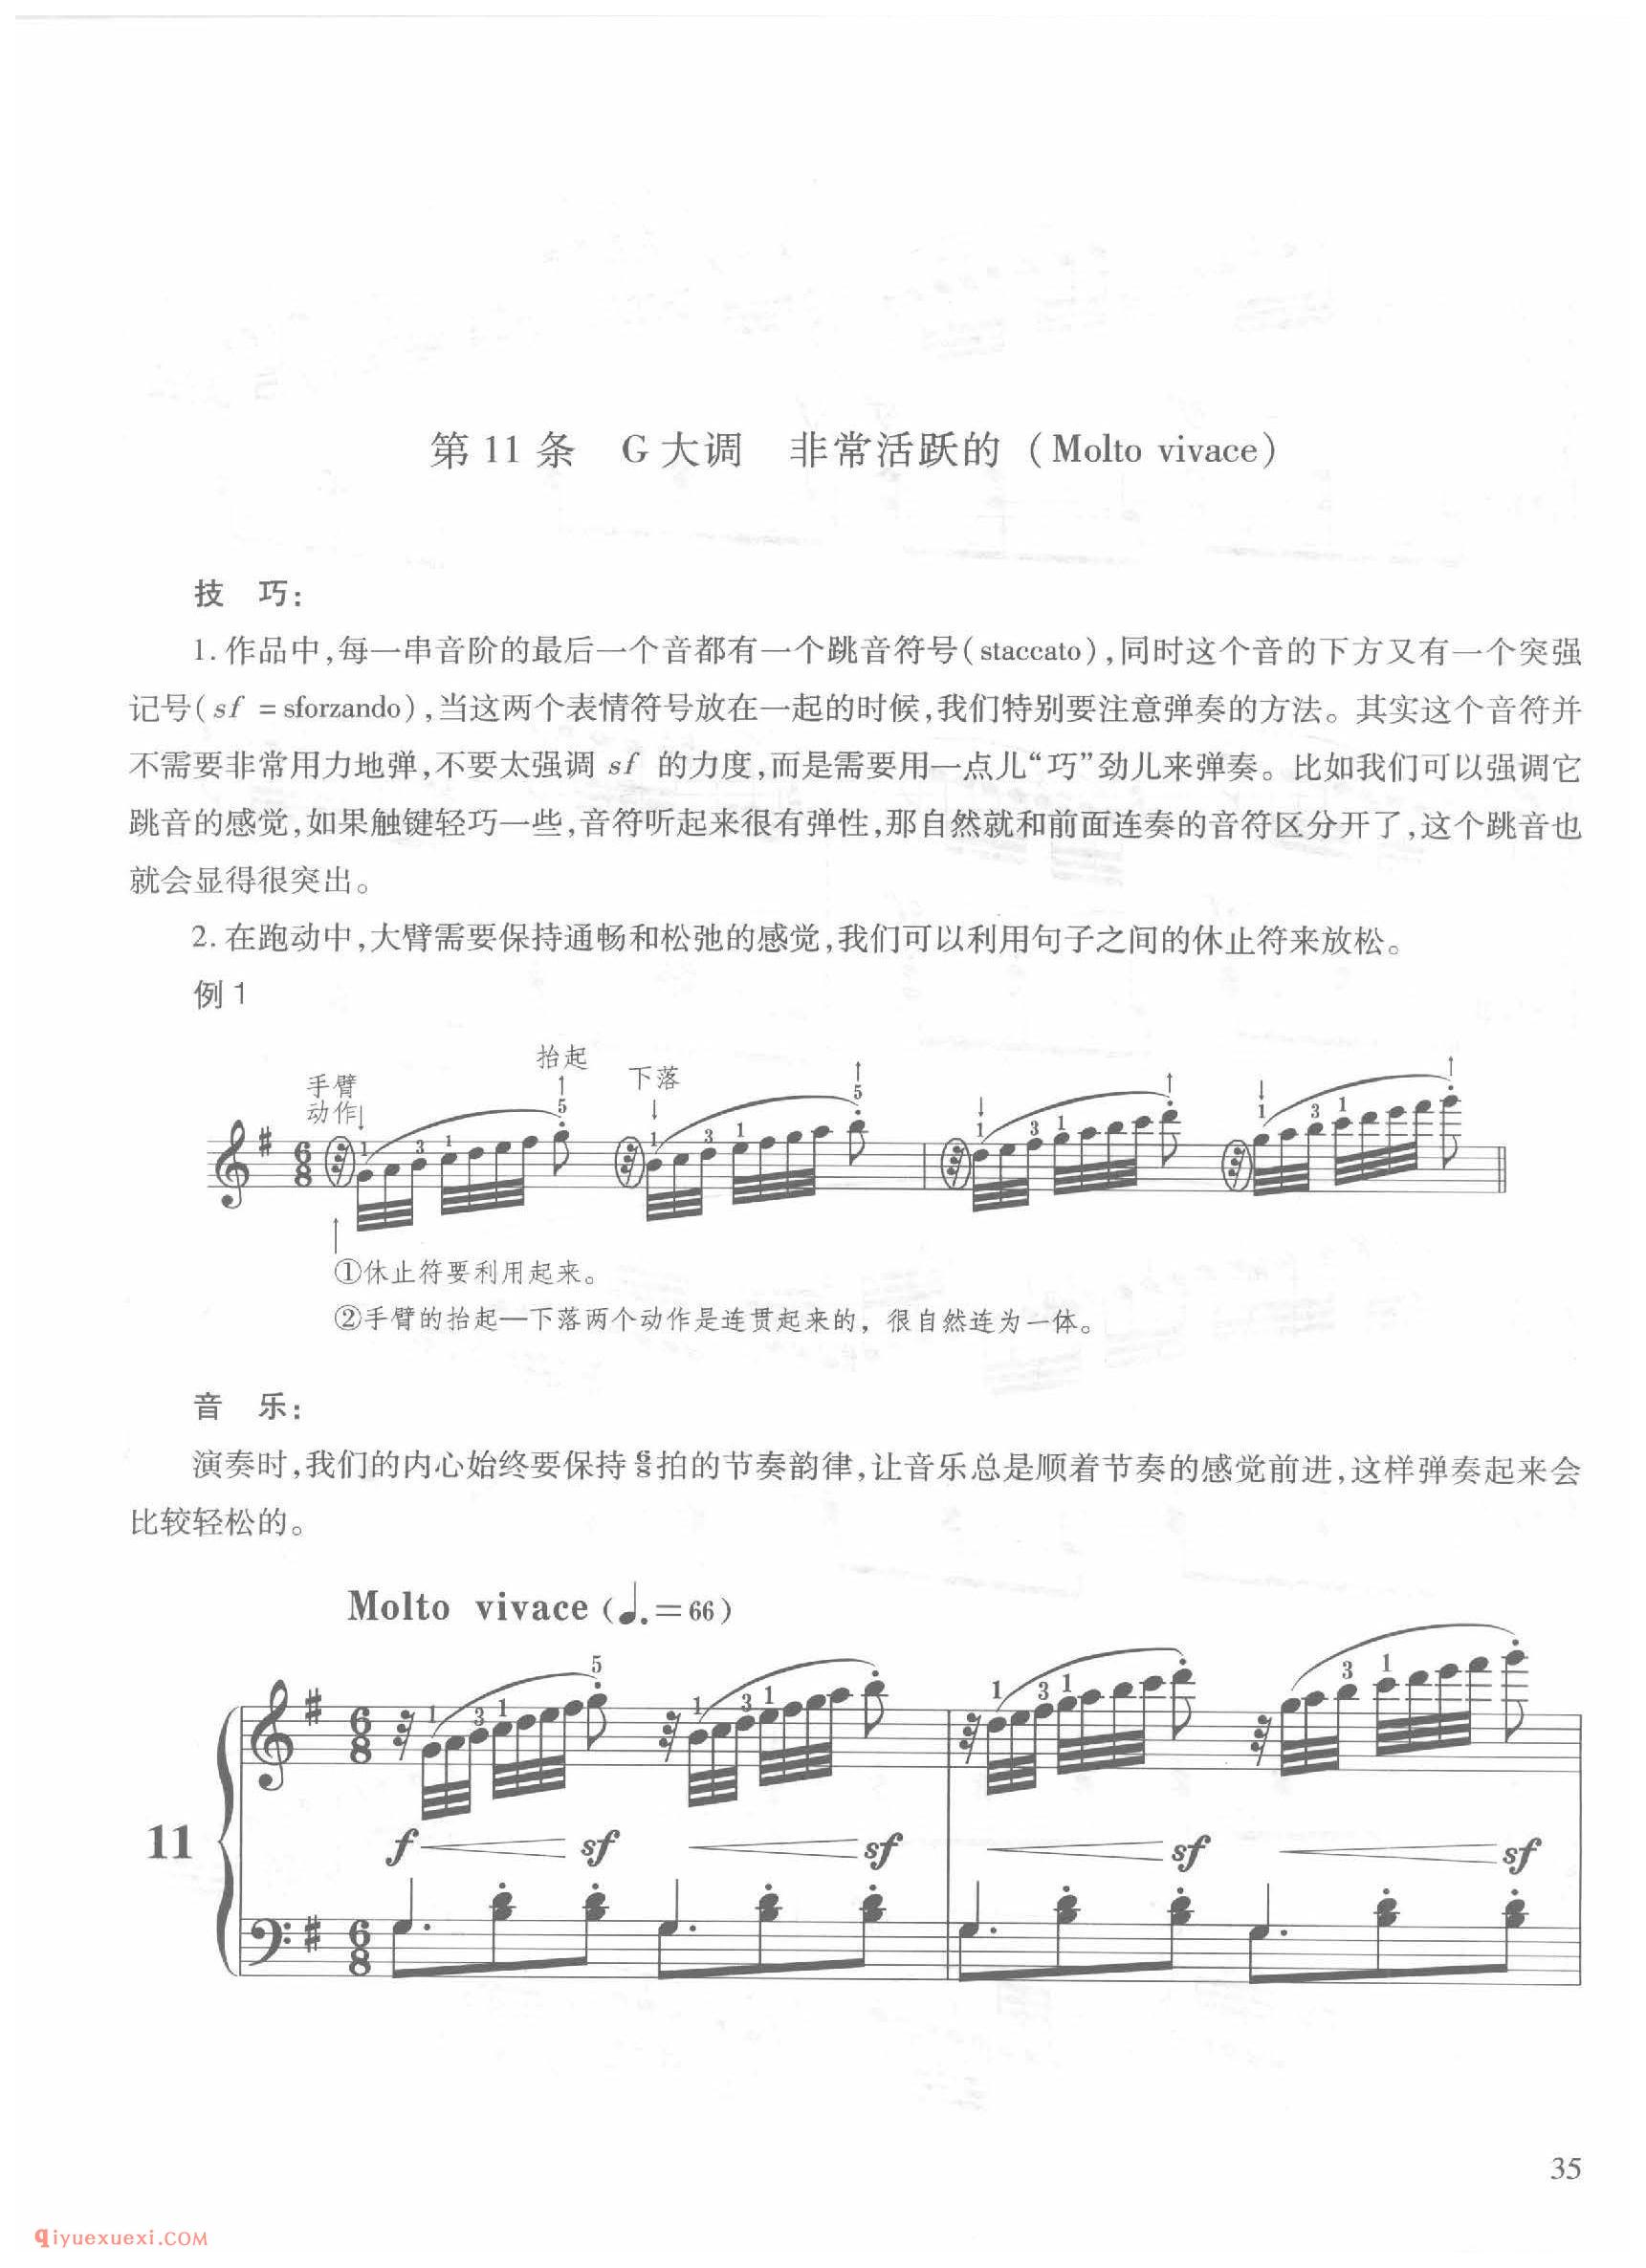 第11条G大调非常活跃的(Molto vivace)车尔尼钢琴作品849_常桦讲解 注释